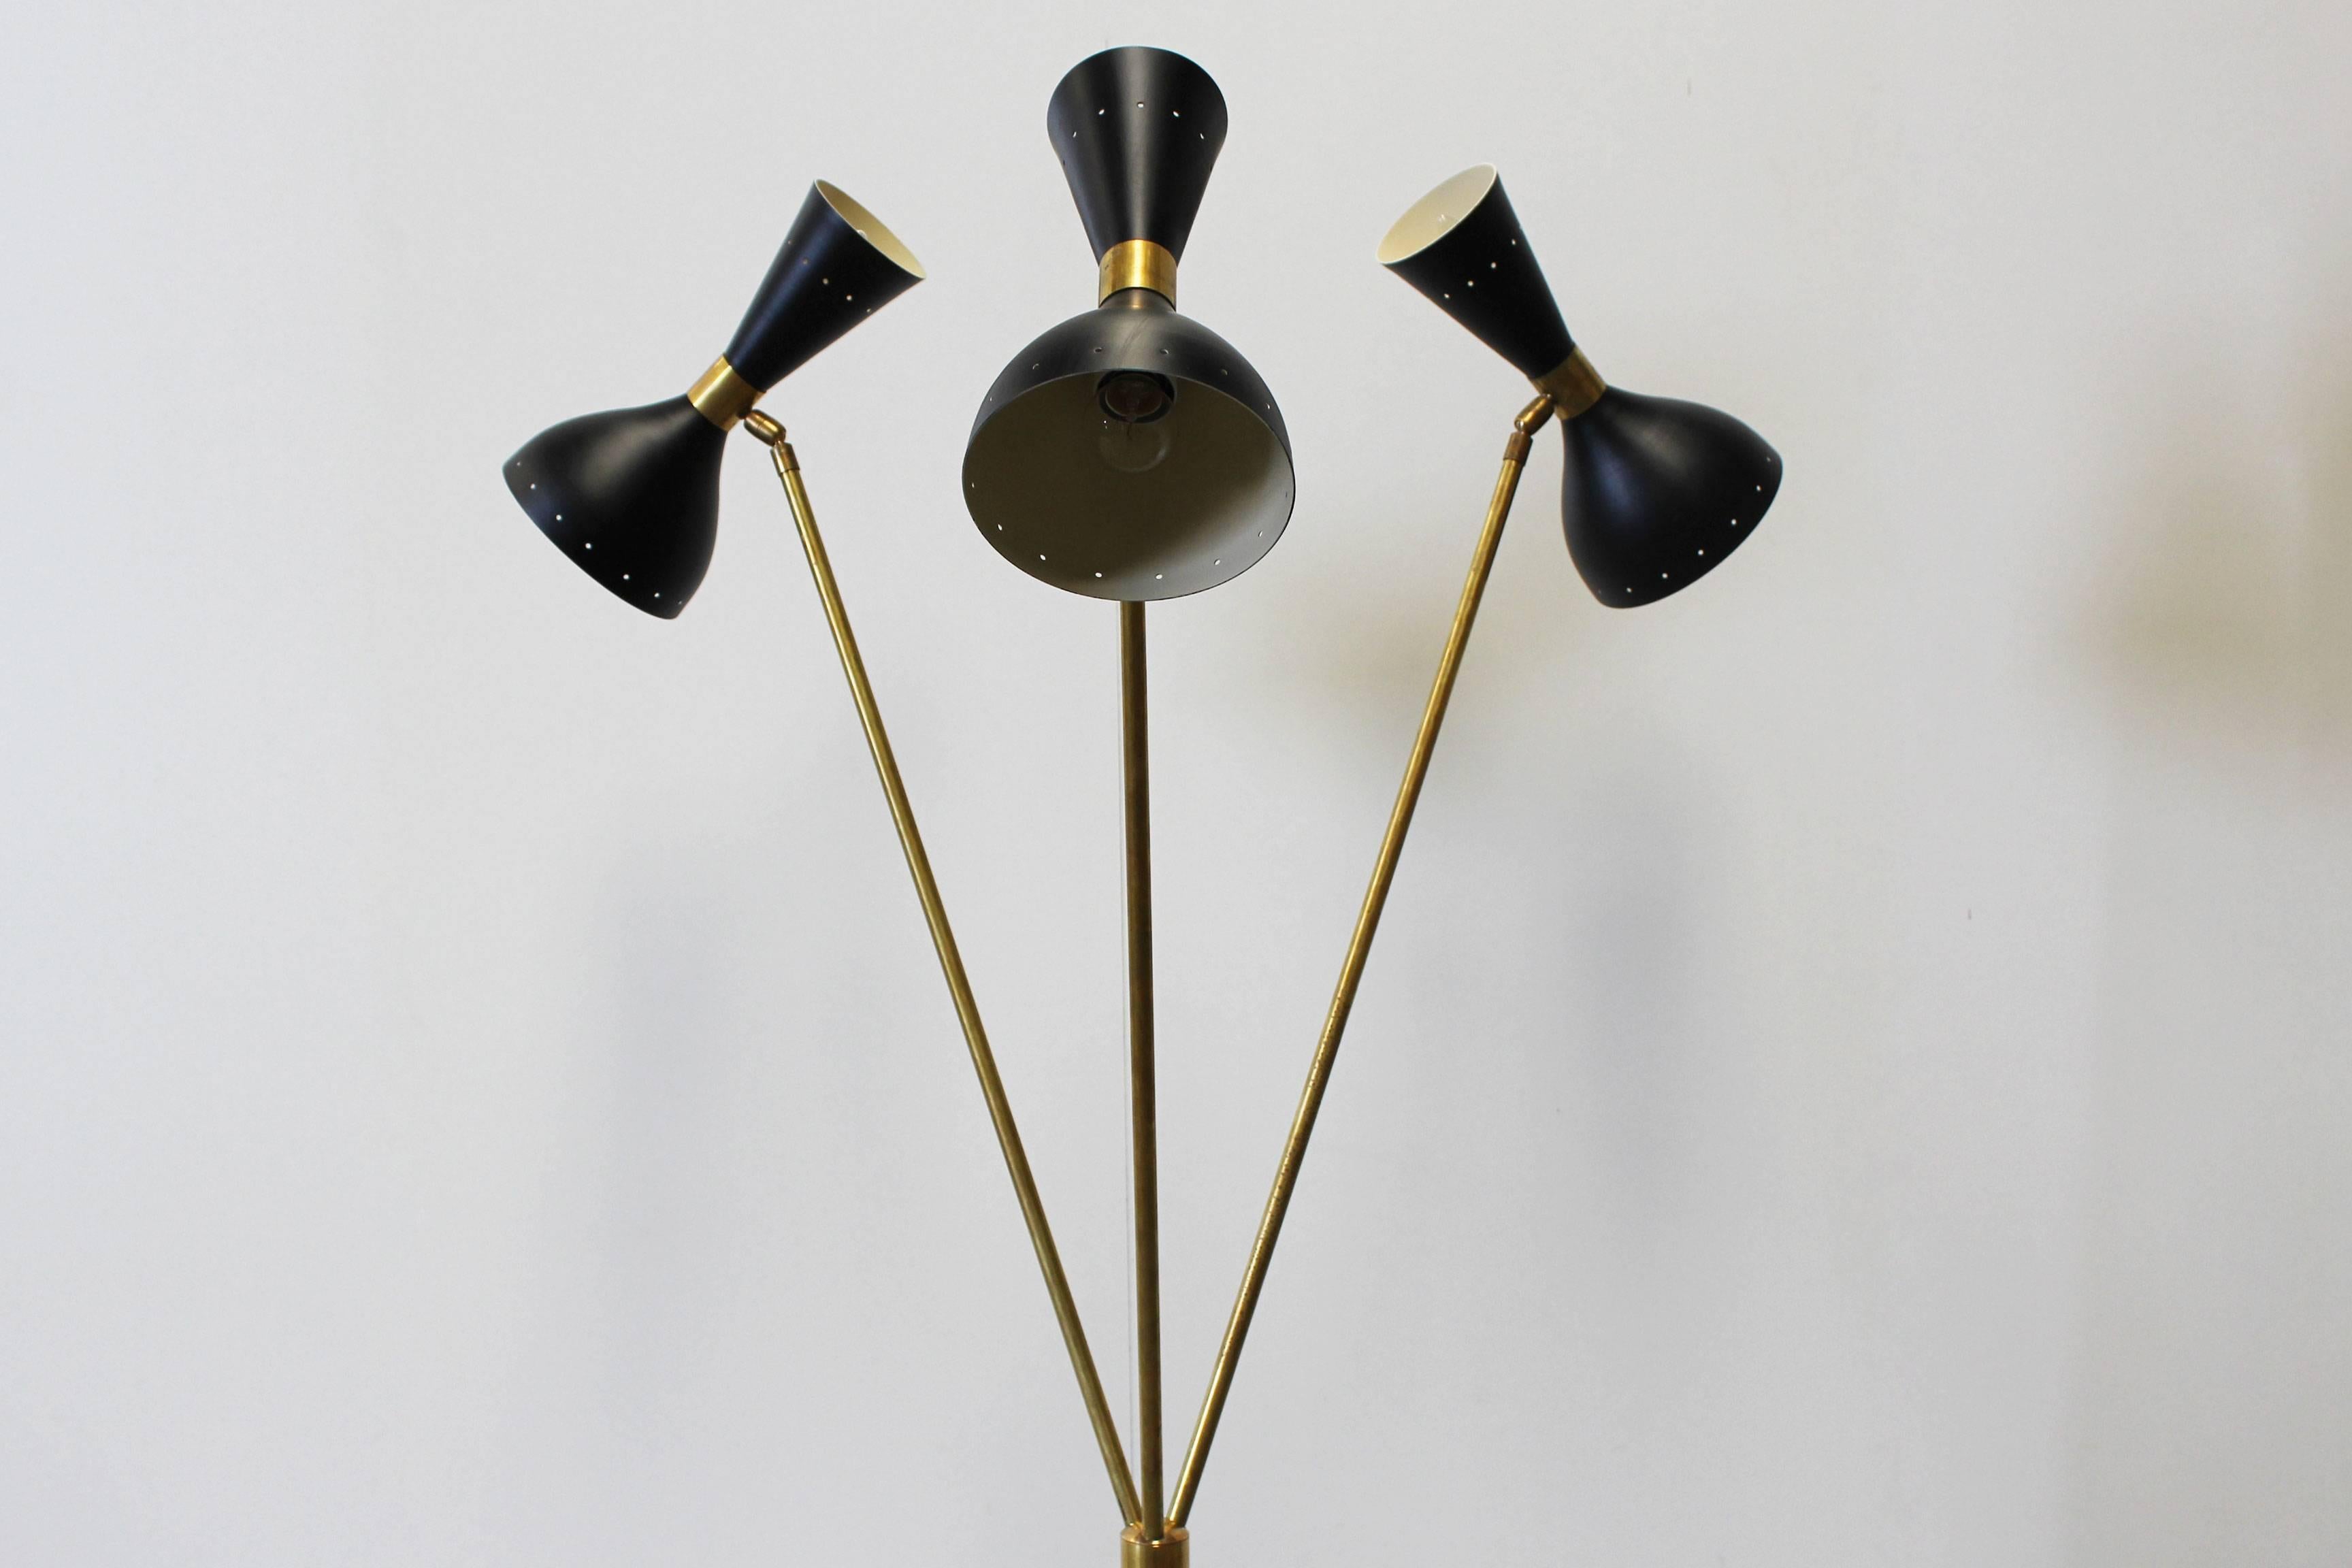 Mid-Century Modern Midcentury Design Italian Minimalist Floor Lamp Style 1950s Stilnovo Brass Black